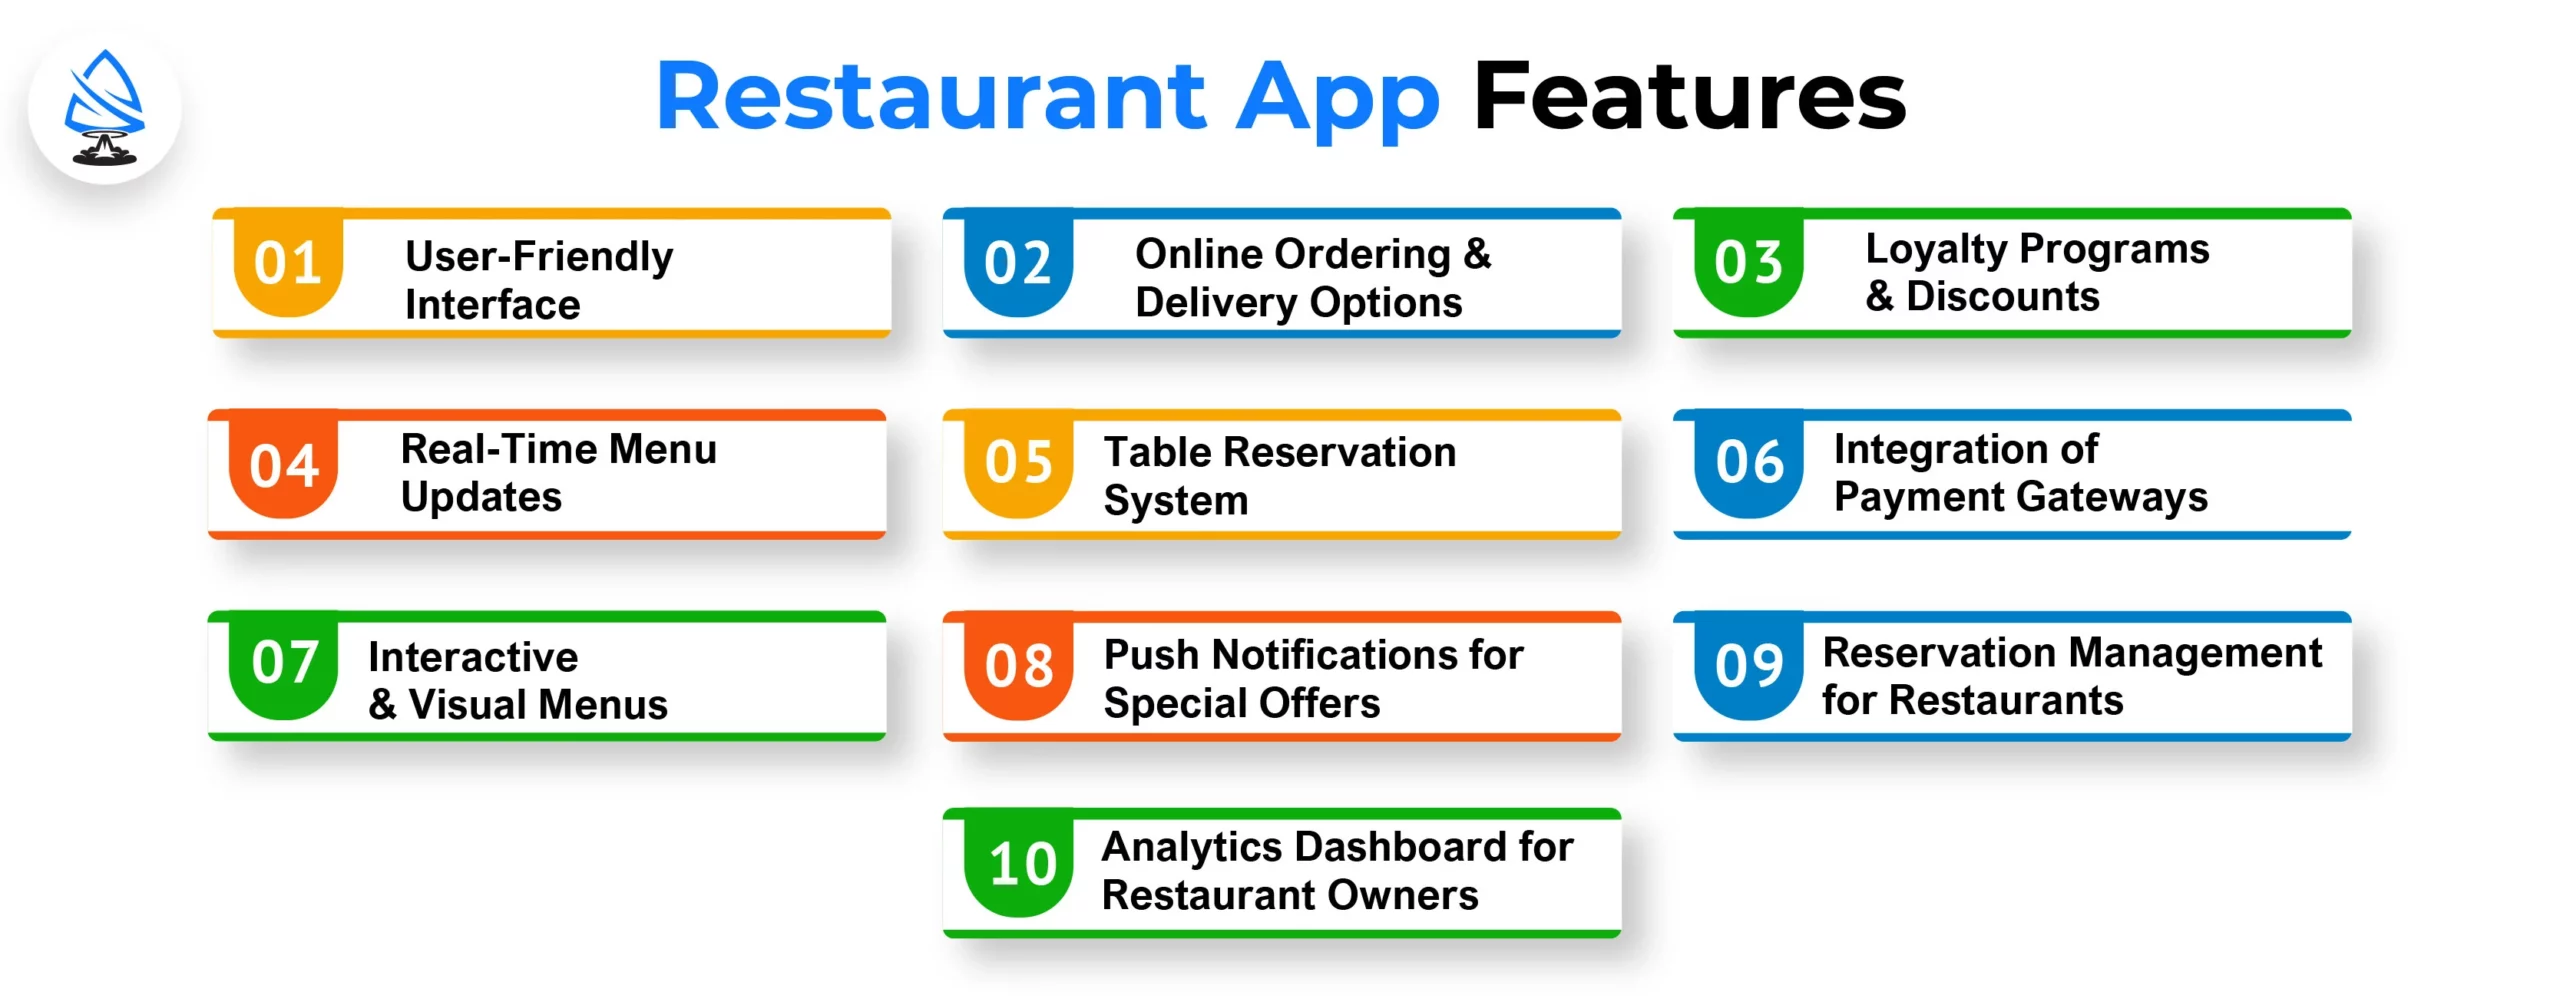 Restaurant App Features Restaurant App Features